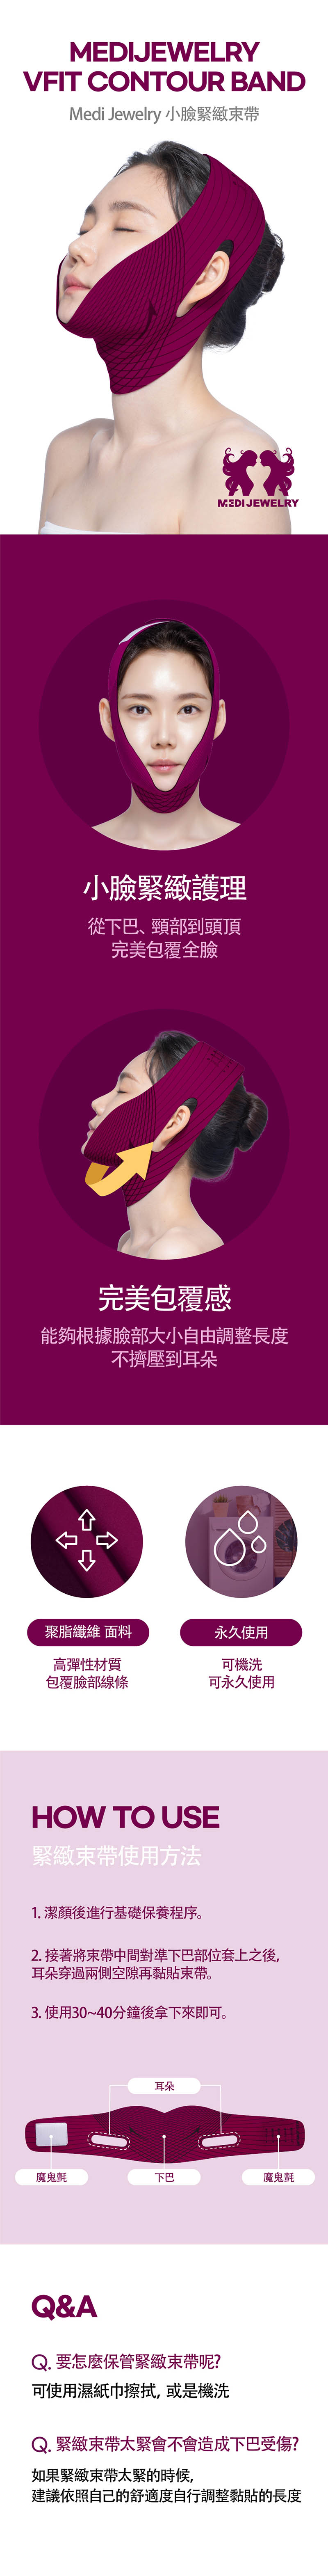 韓國醫美Medi Jewelry輪廓緊塑按摩精華-momo購物網- 雙11優惠推薦- 2022年11月